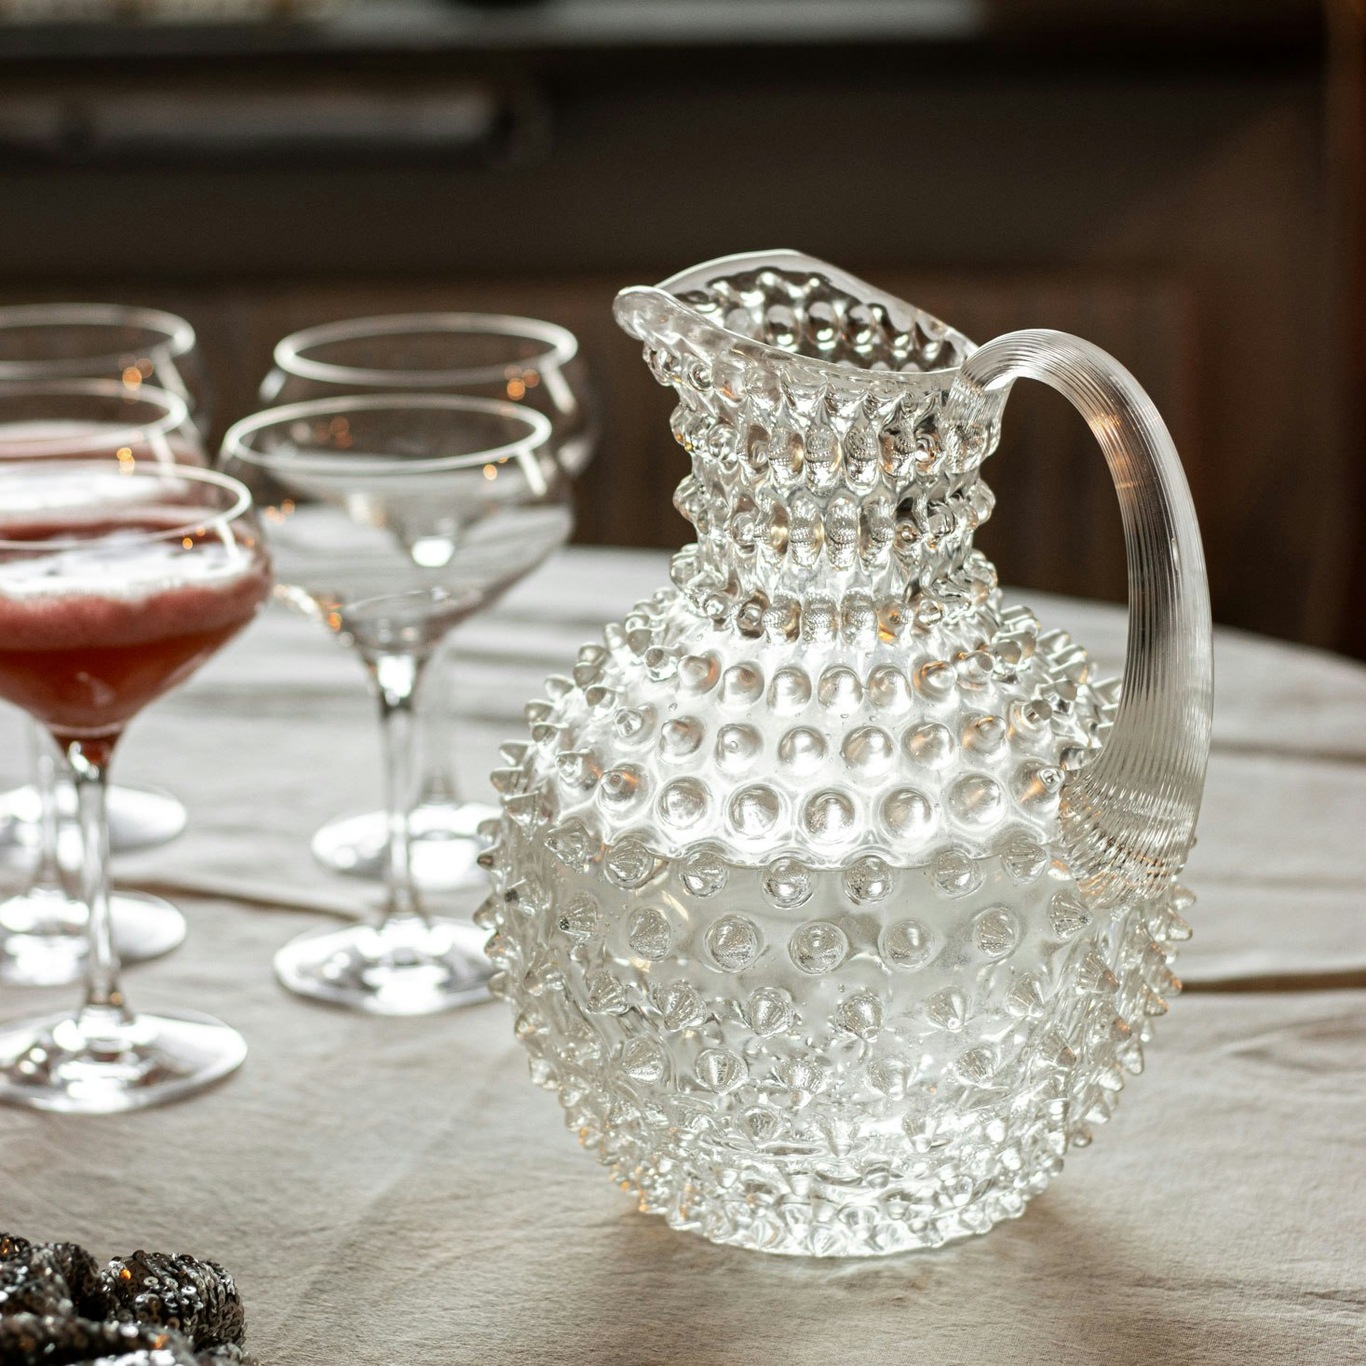 1 Liter Glass Carafe - Drink Pitcher & Elegant Wine Carafe